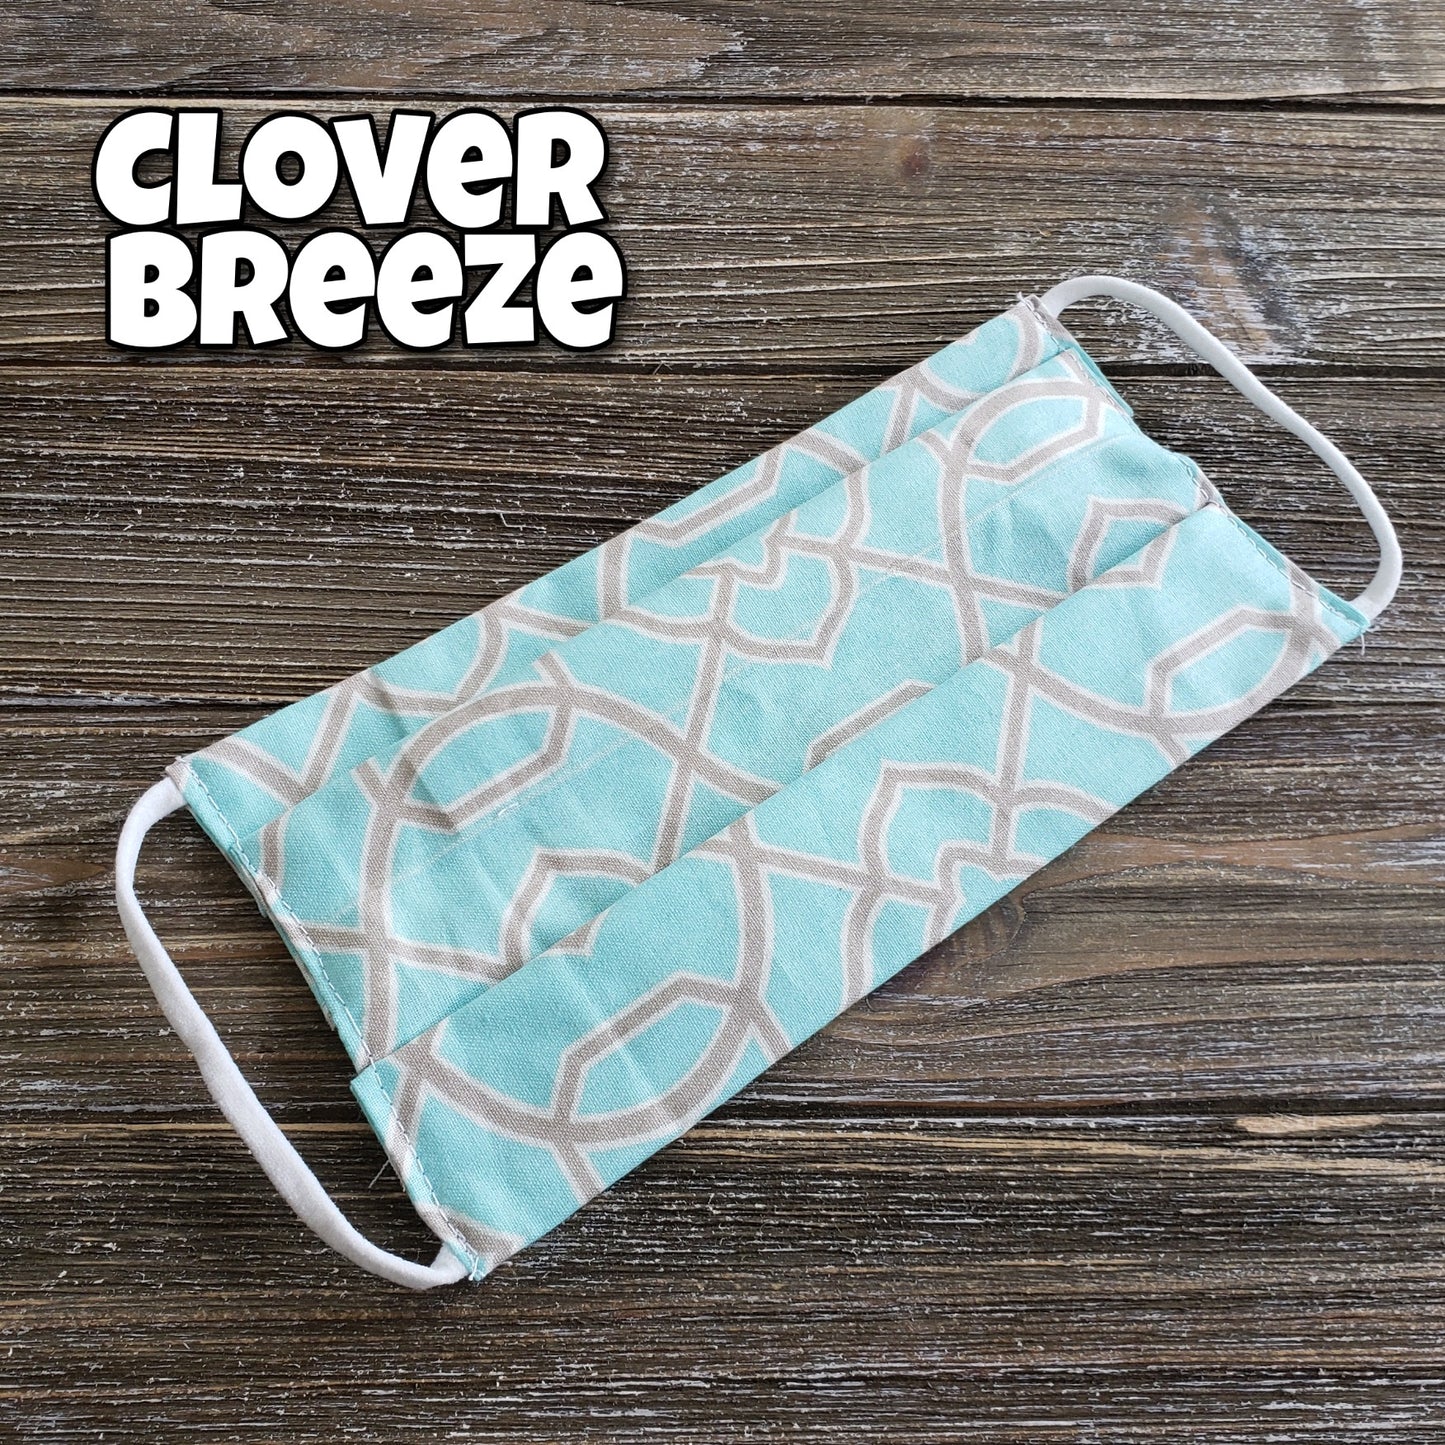 Clover Breeze Fabric Mask